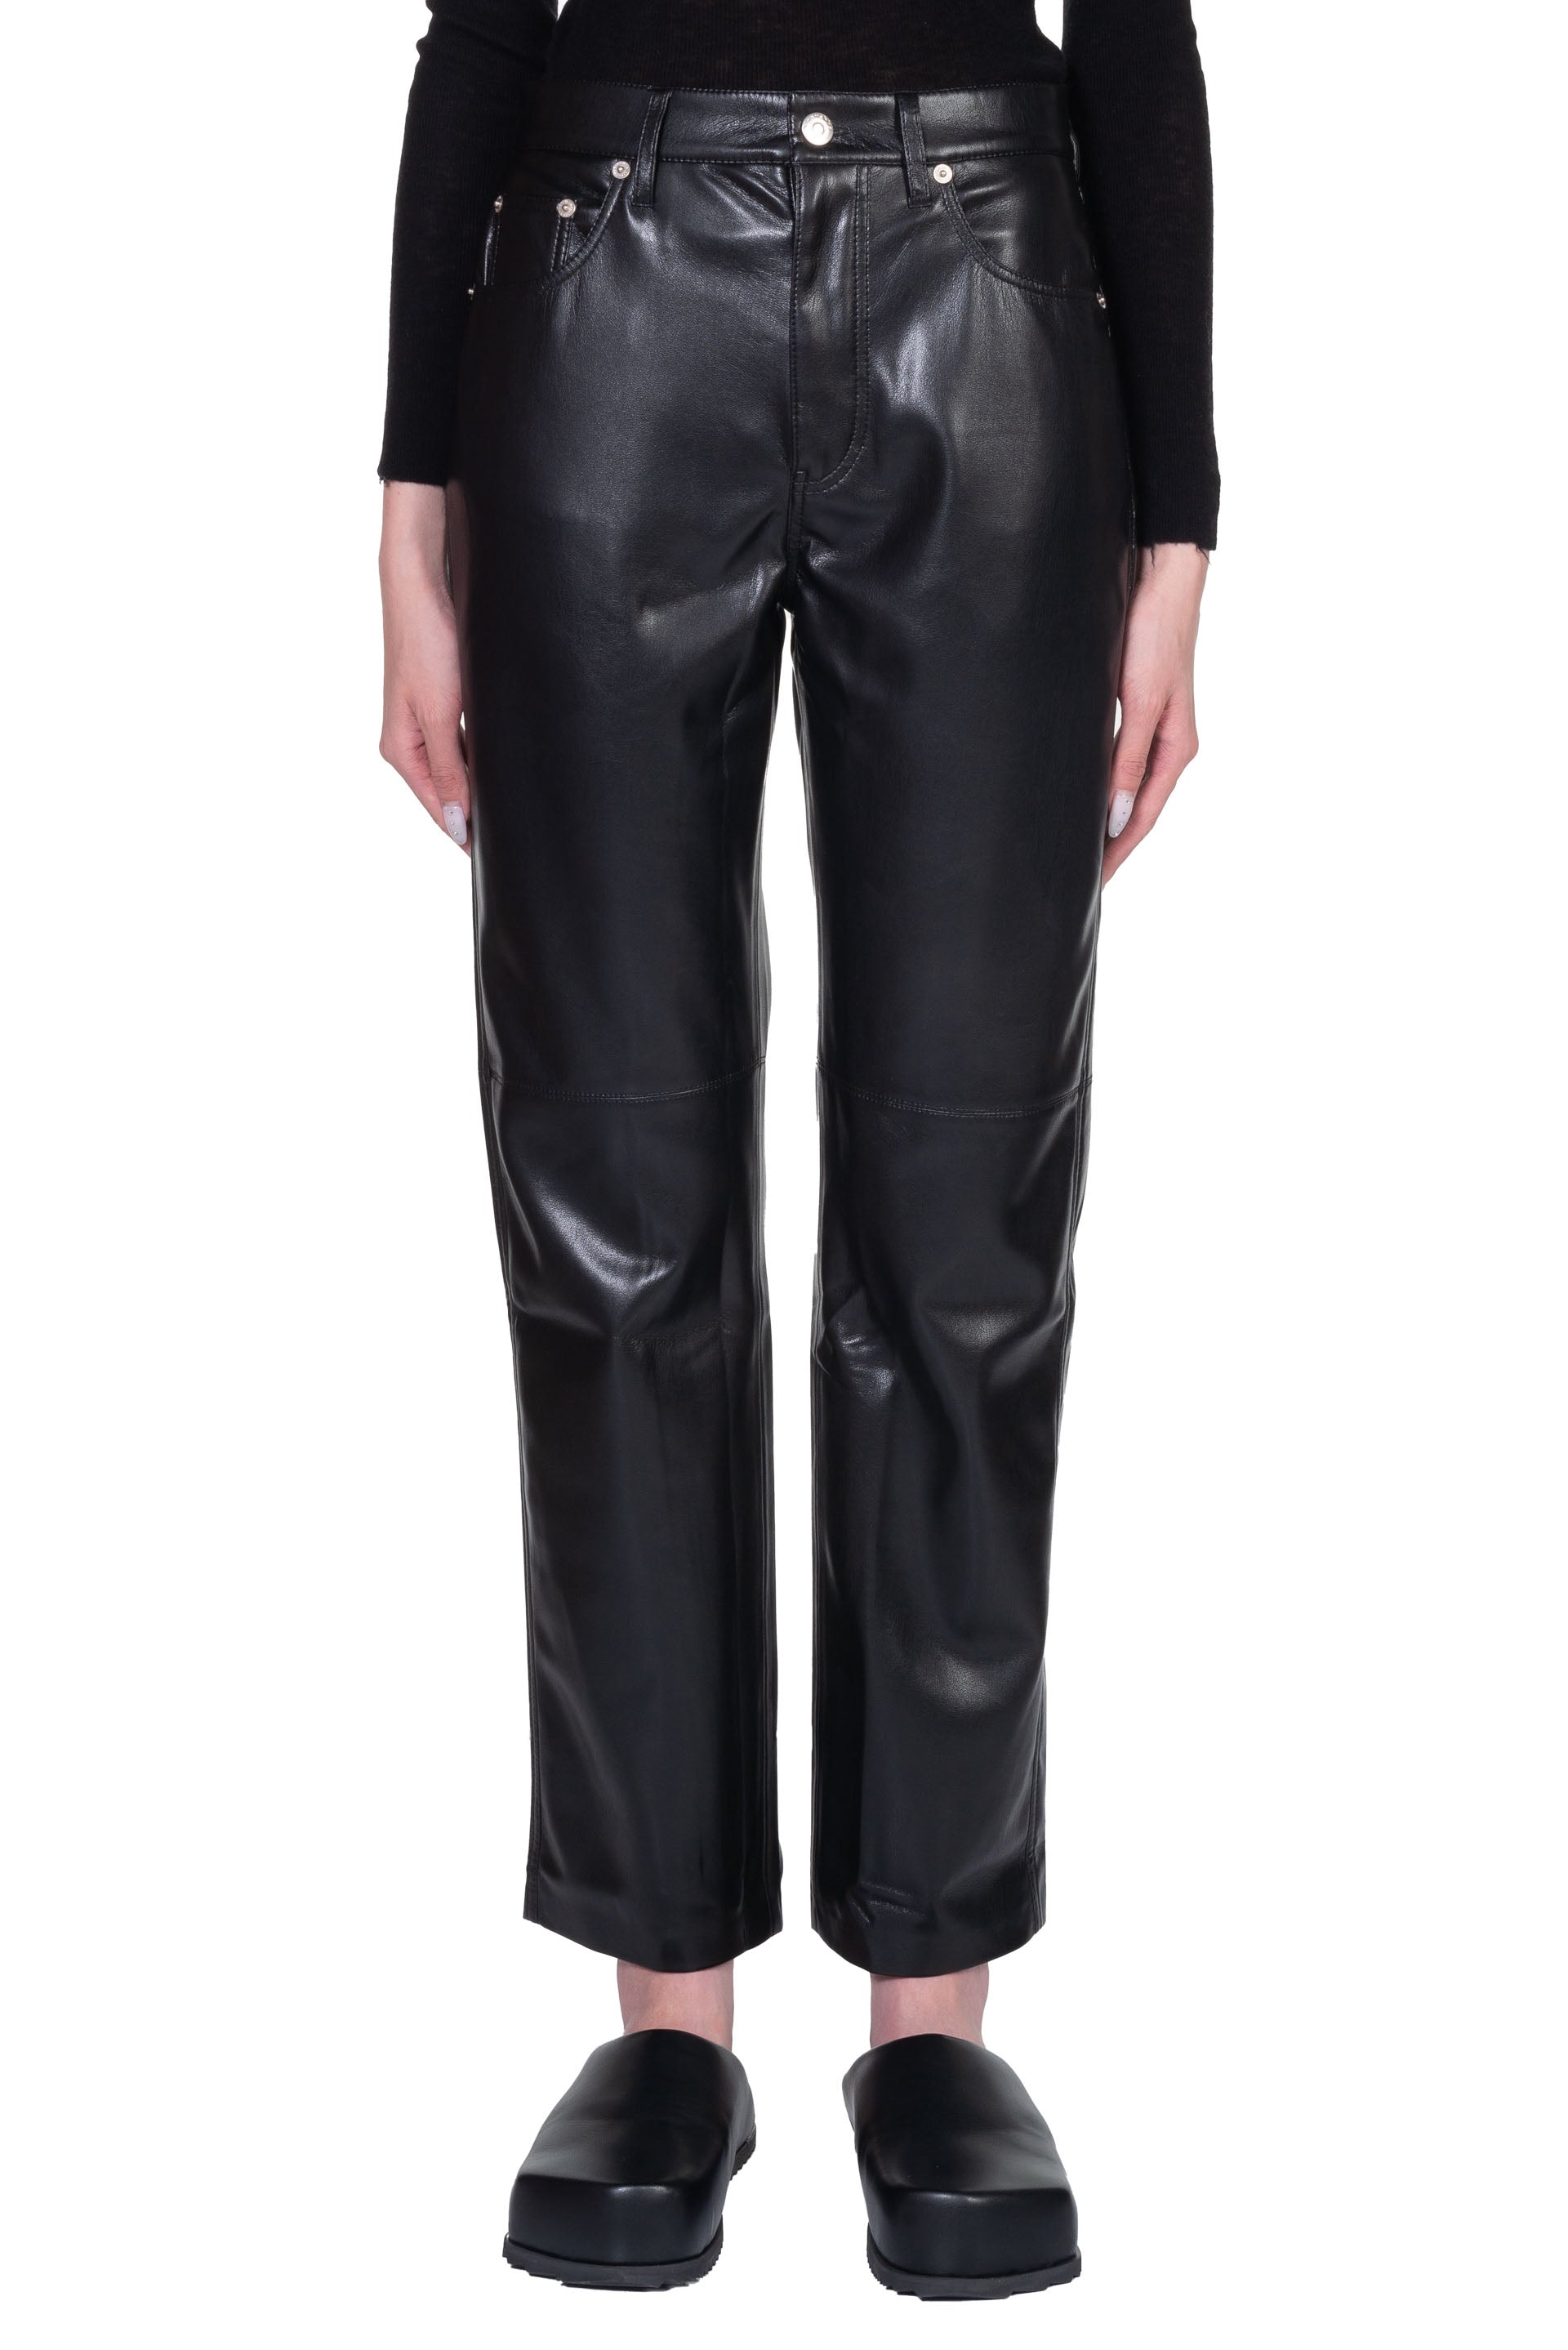 Nanushka Vinni Vegan Leather Pants Black | UJNG